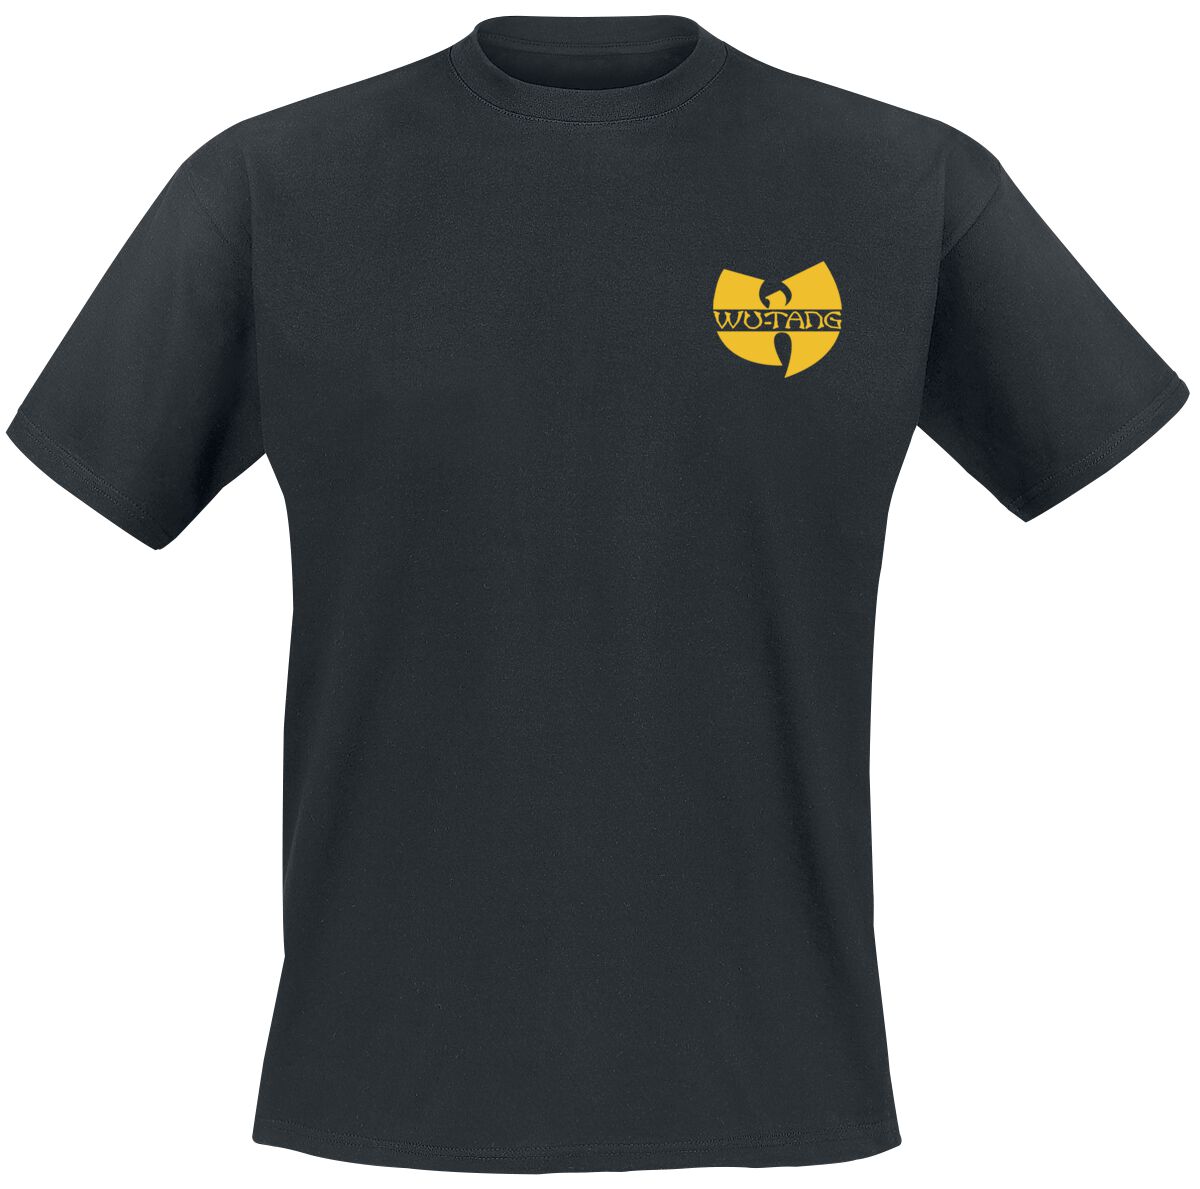 Image of T-Shirt di Wu-Tang Clan - Black Logo - S a XXL - Uomo - nero